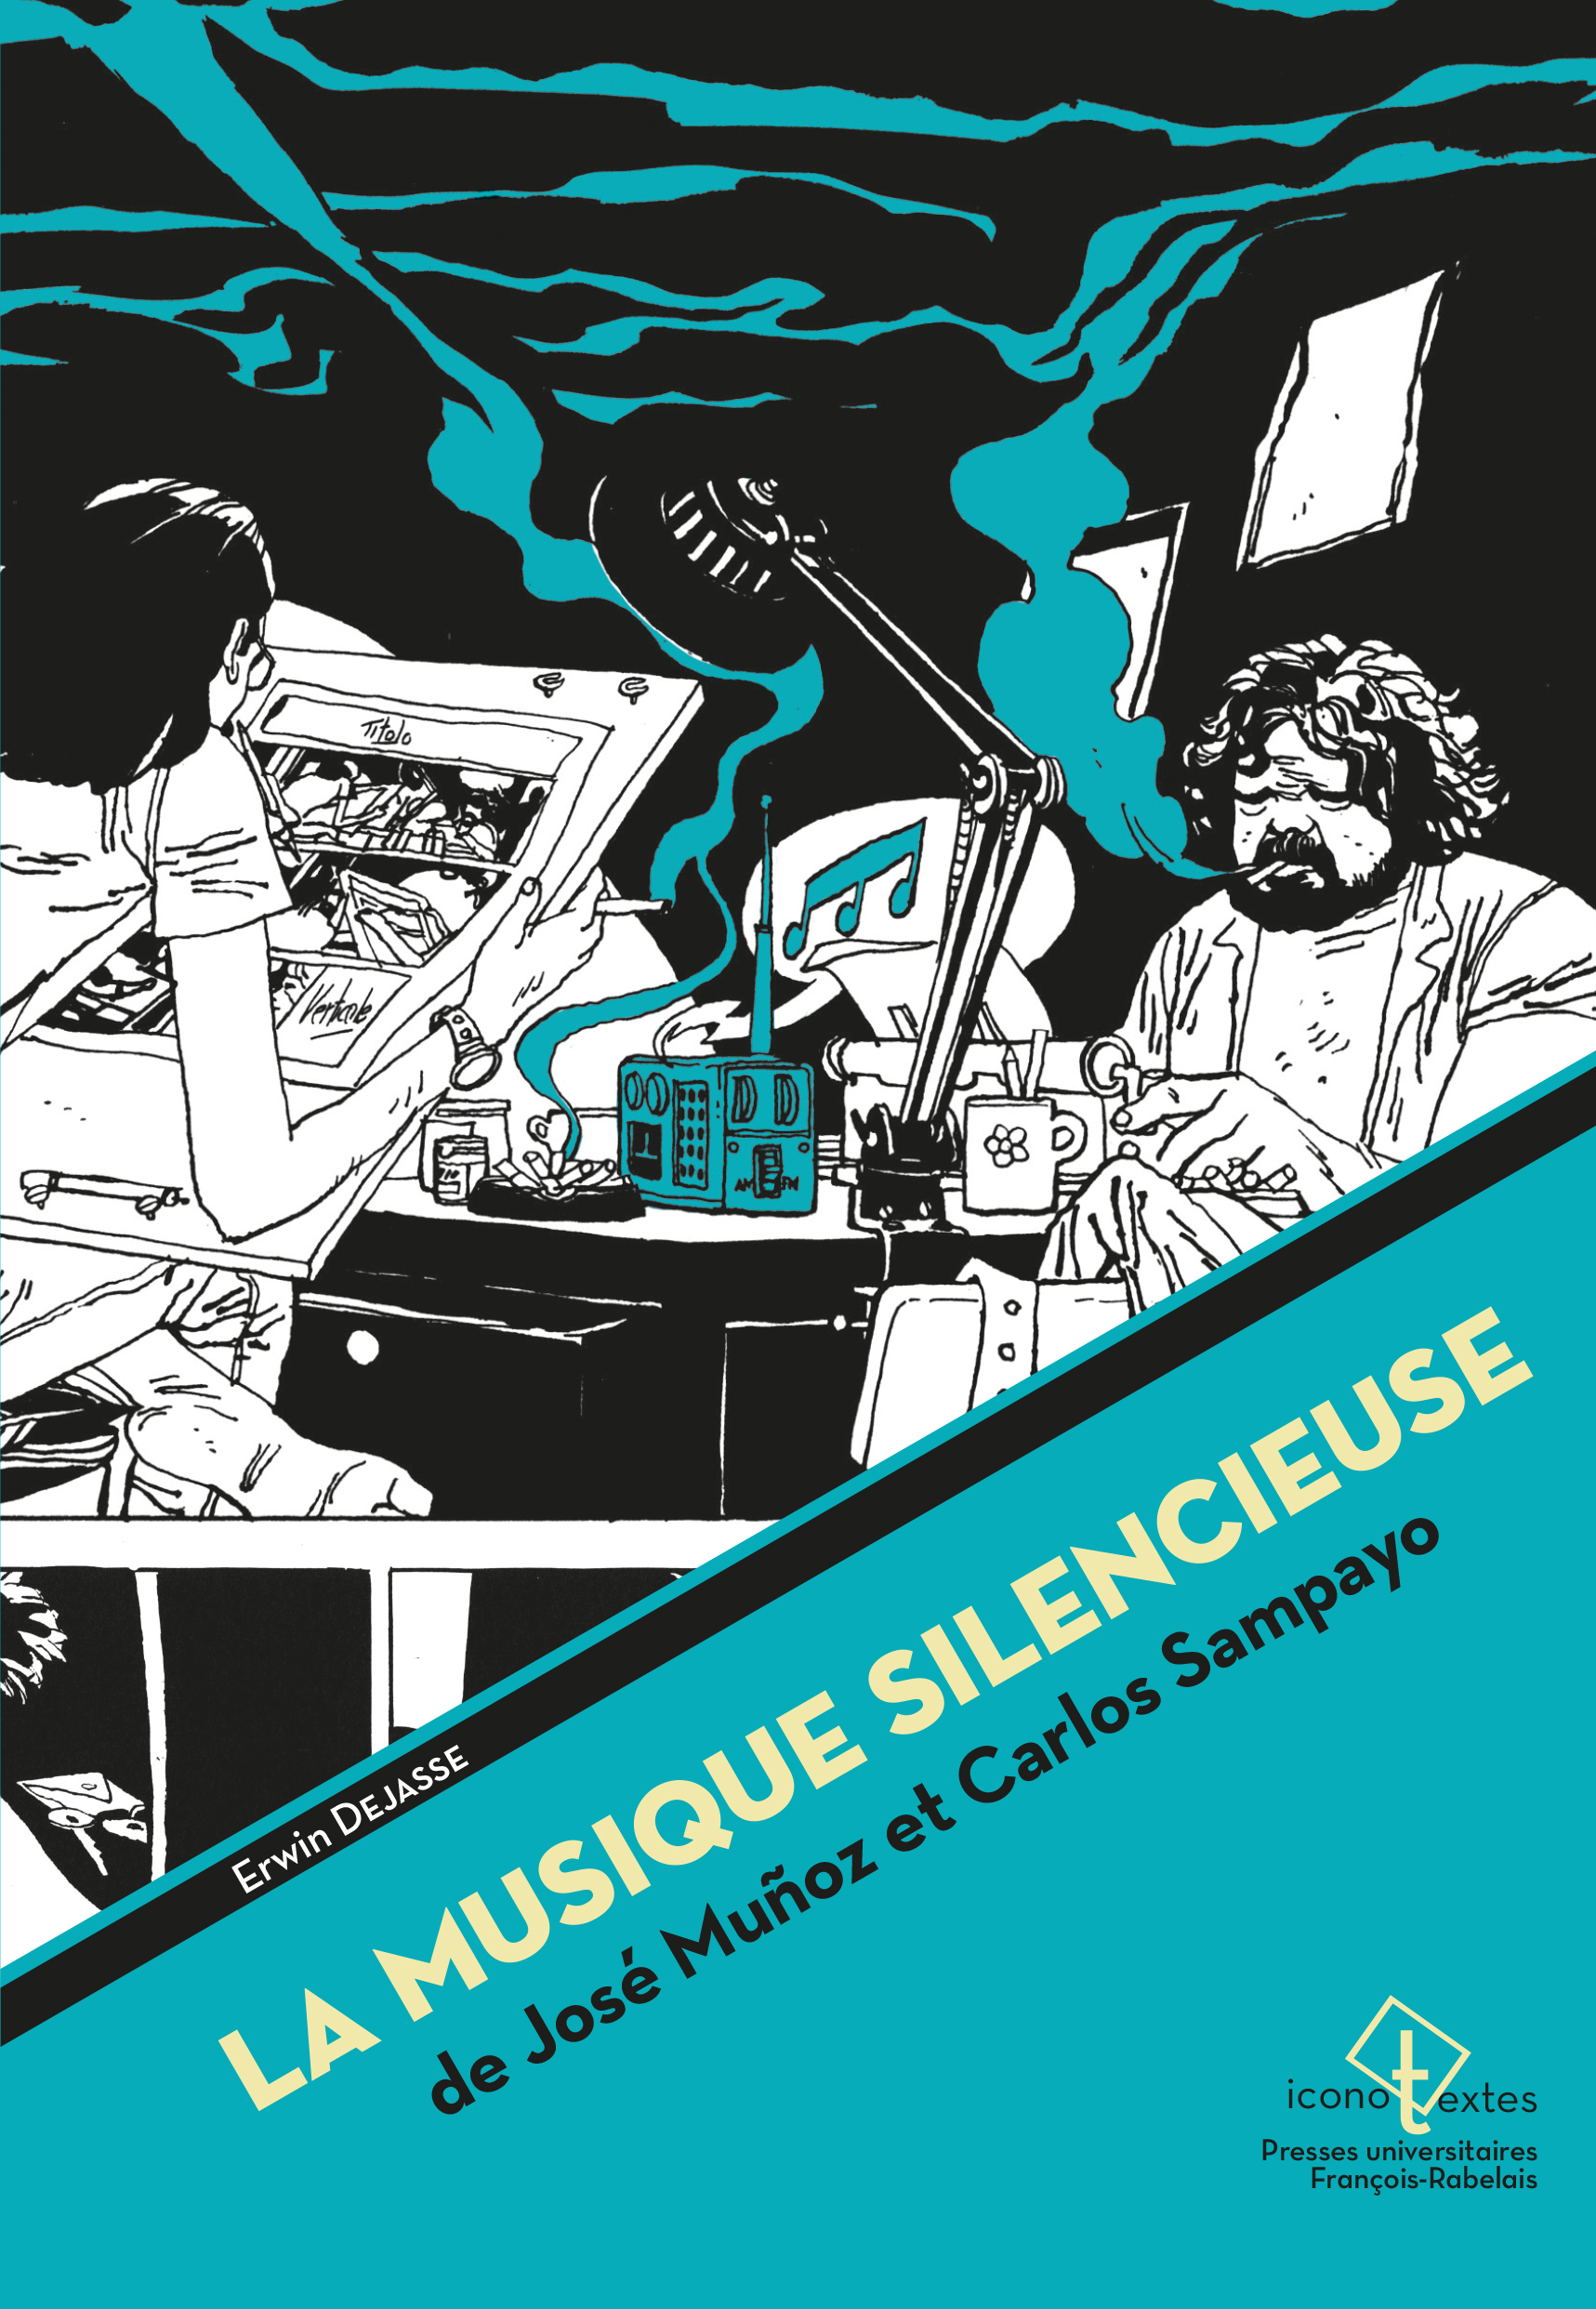 IT-DEJASSE_La musique silencieuse de José Muñoz et Carlos Sampayo